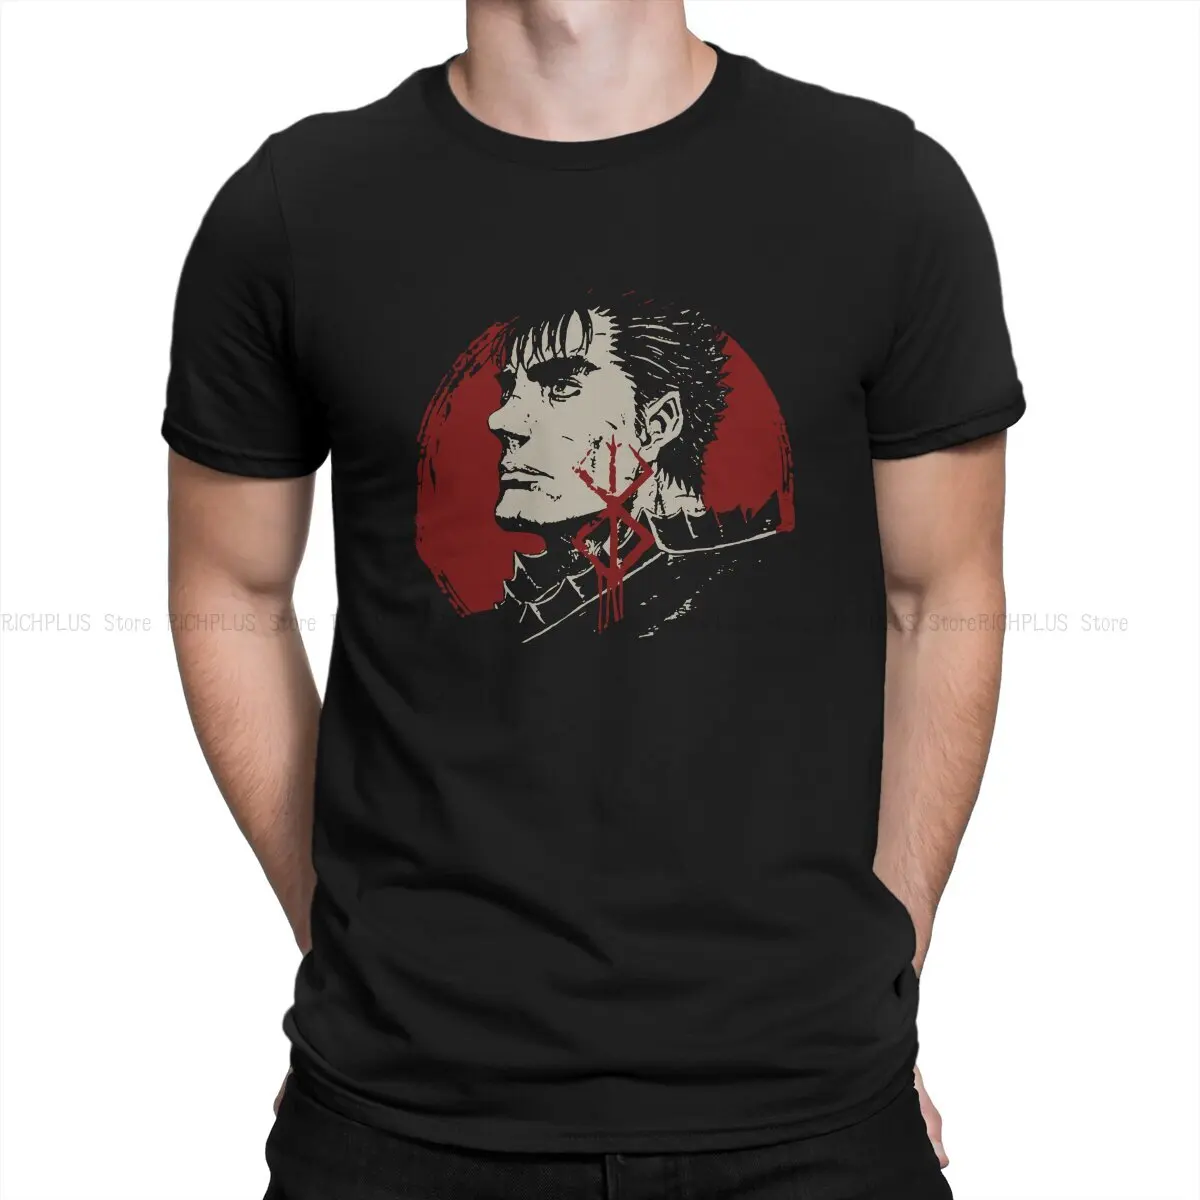 

Мужская футболка Berserk Griffith с рисунком манги, Аватар, модная футболка из полиэстера, графические свитшоты, новый тренд